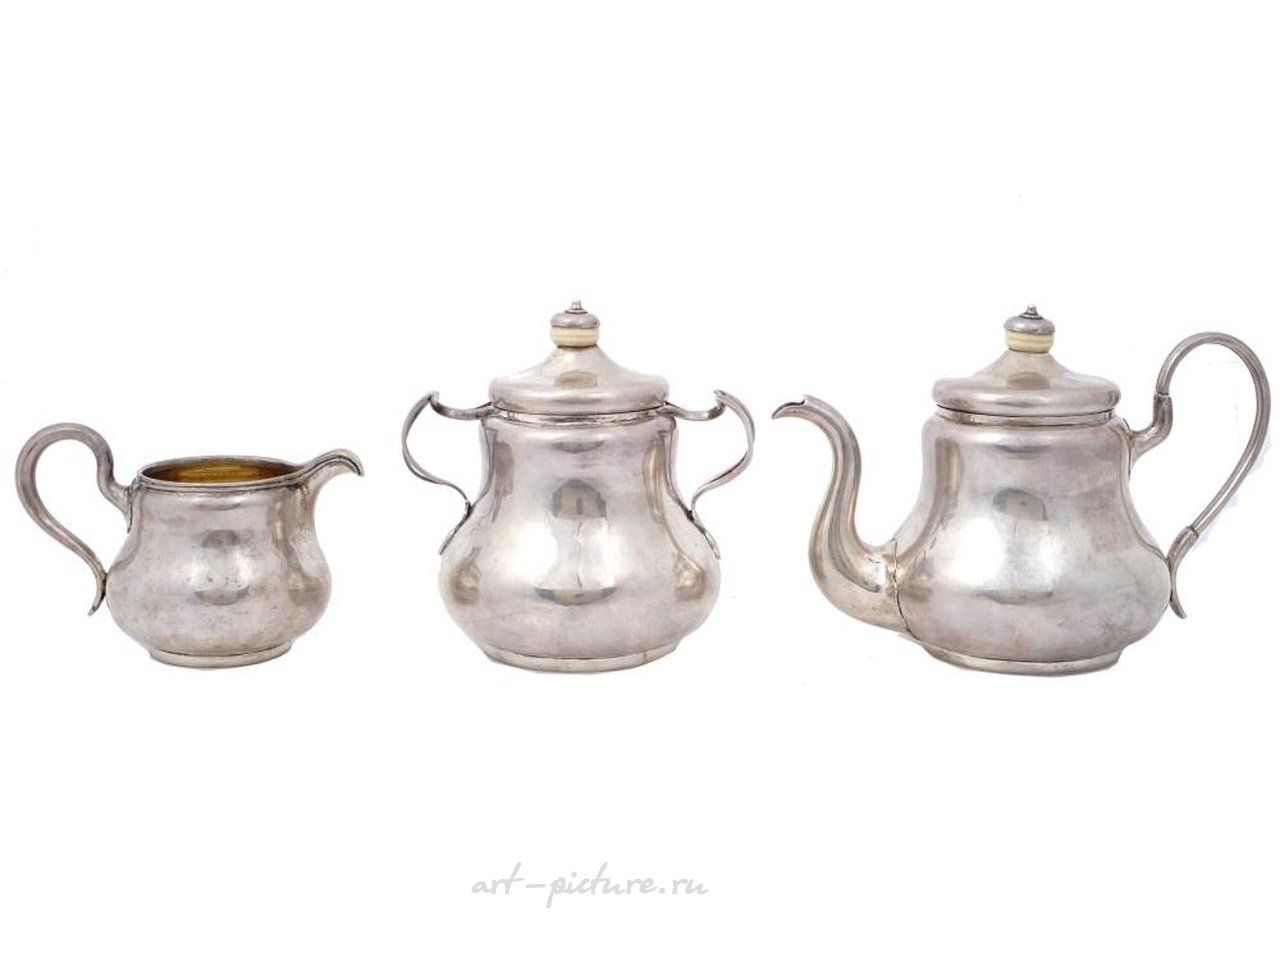 Русское серебро , Антикварный русский серебряный чайный сервиз от Губкина, 1856 год